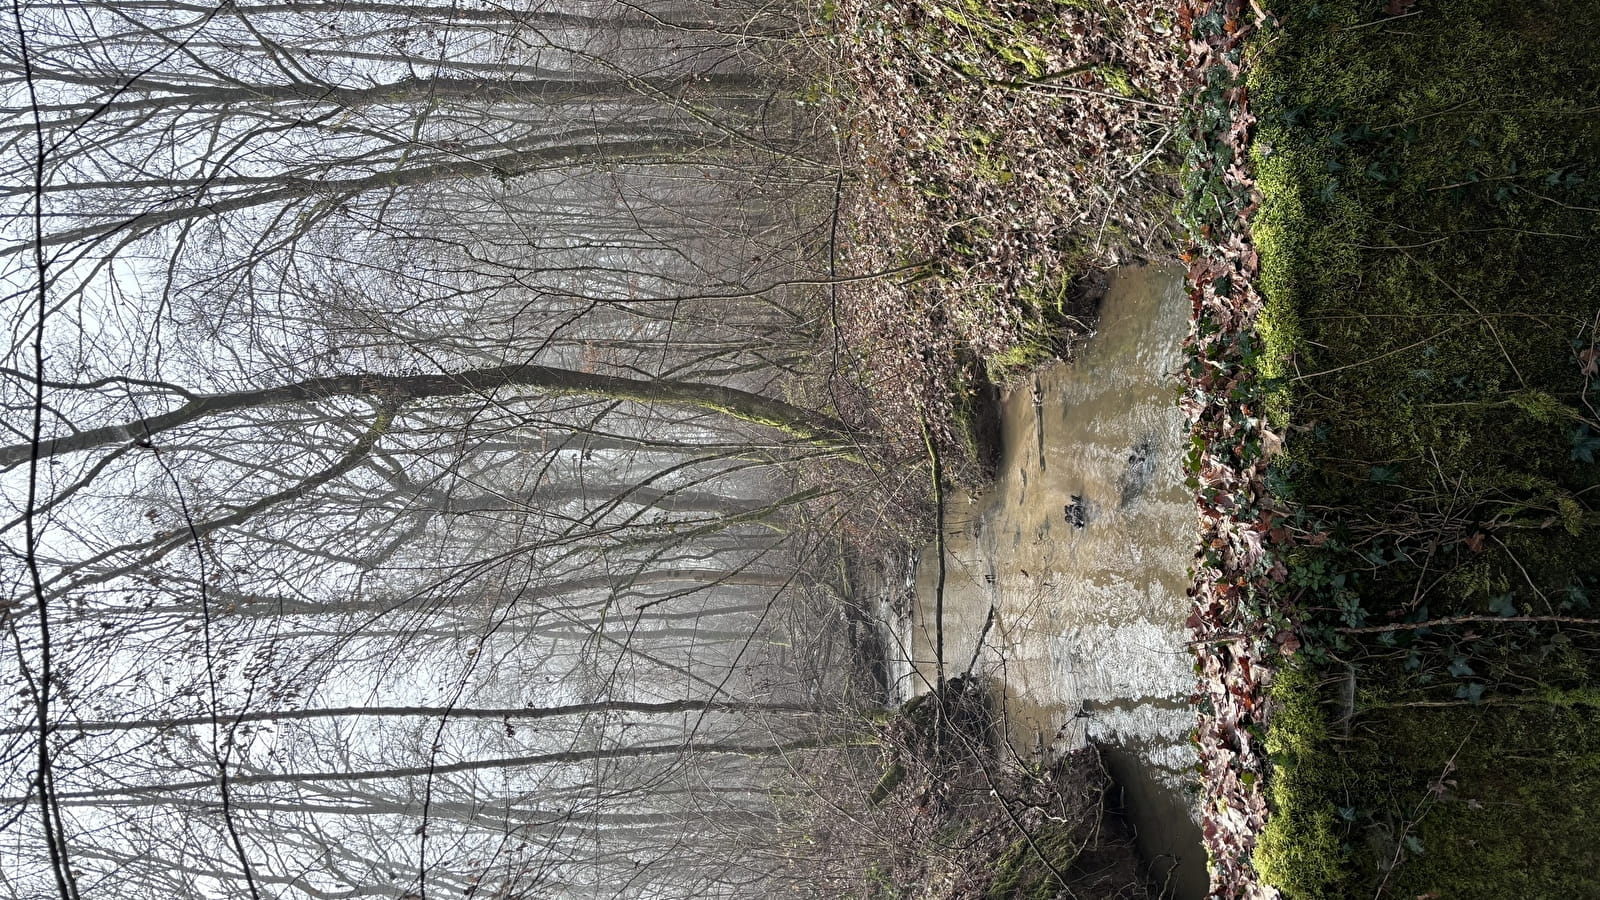 Balade Verte - Spaziergang zwischen Wiesen, Wäldern und Flüssen (VSG 2)